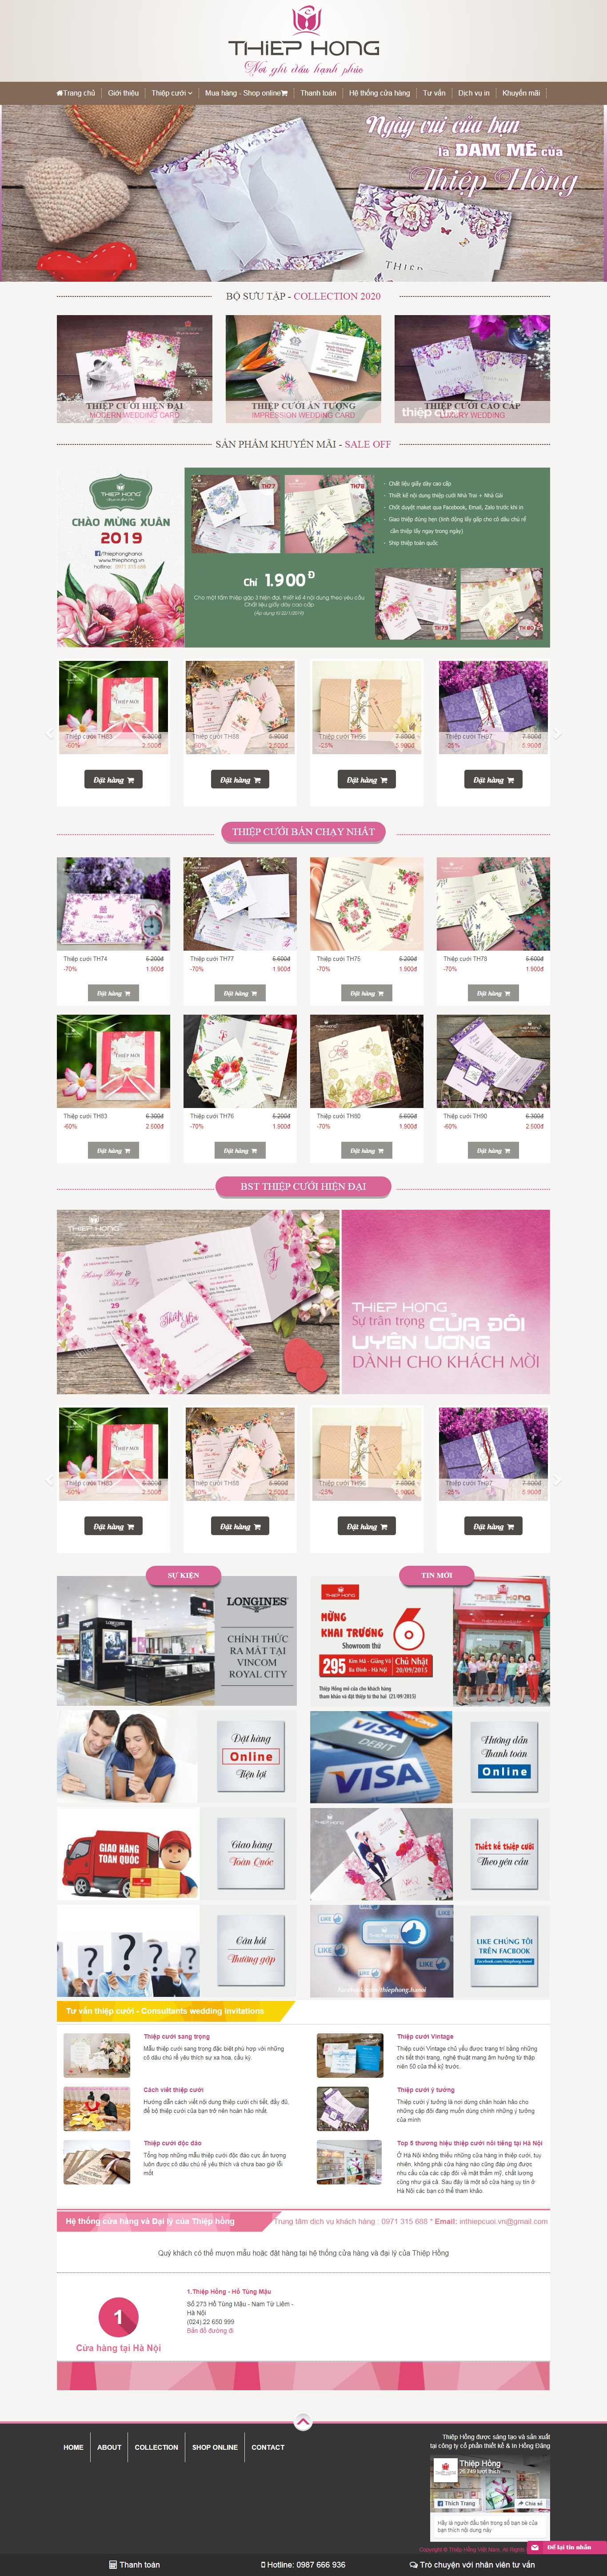 Thiết kế Website thiệp cưới - thiephong.vn